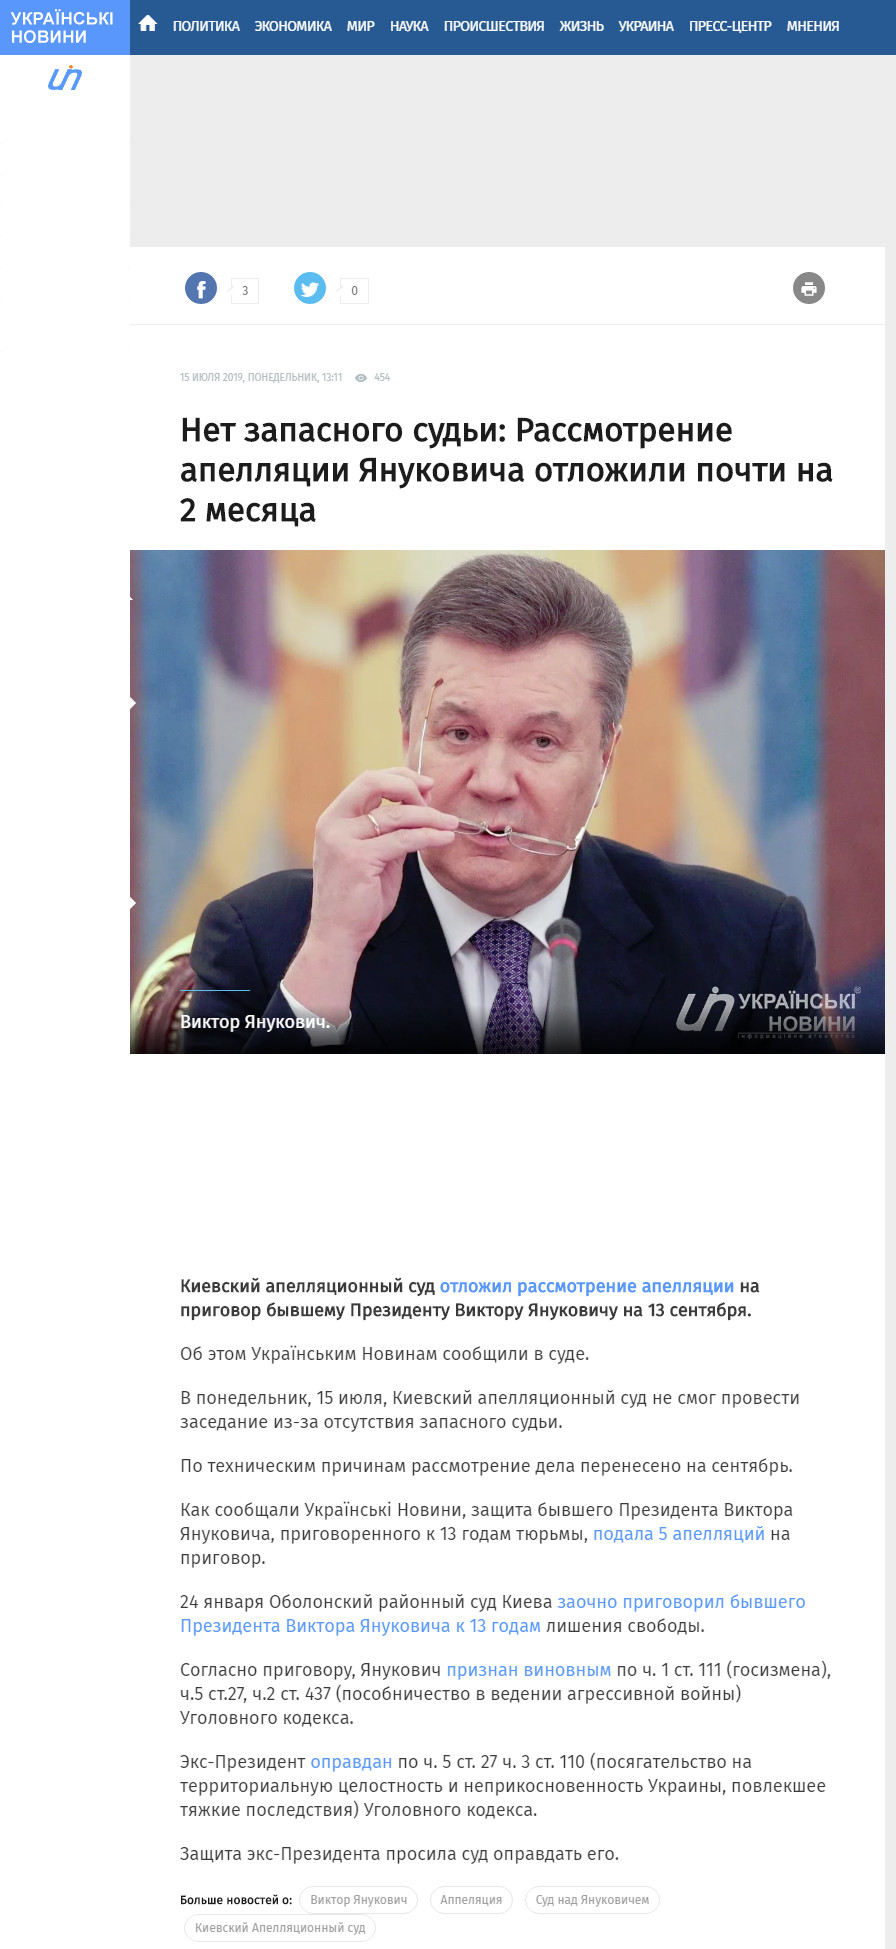 https://ukranews.com/news/642255-sud-nad-yanukovichem-sostoitsya-13-sentyabrya